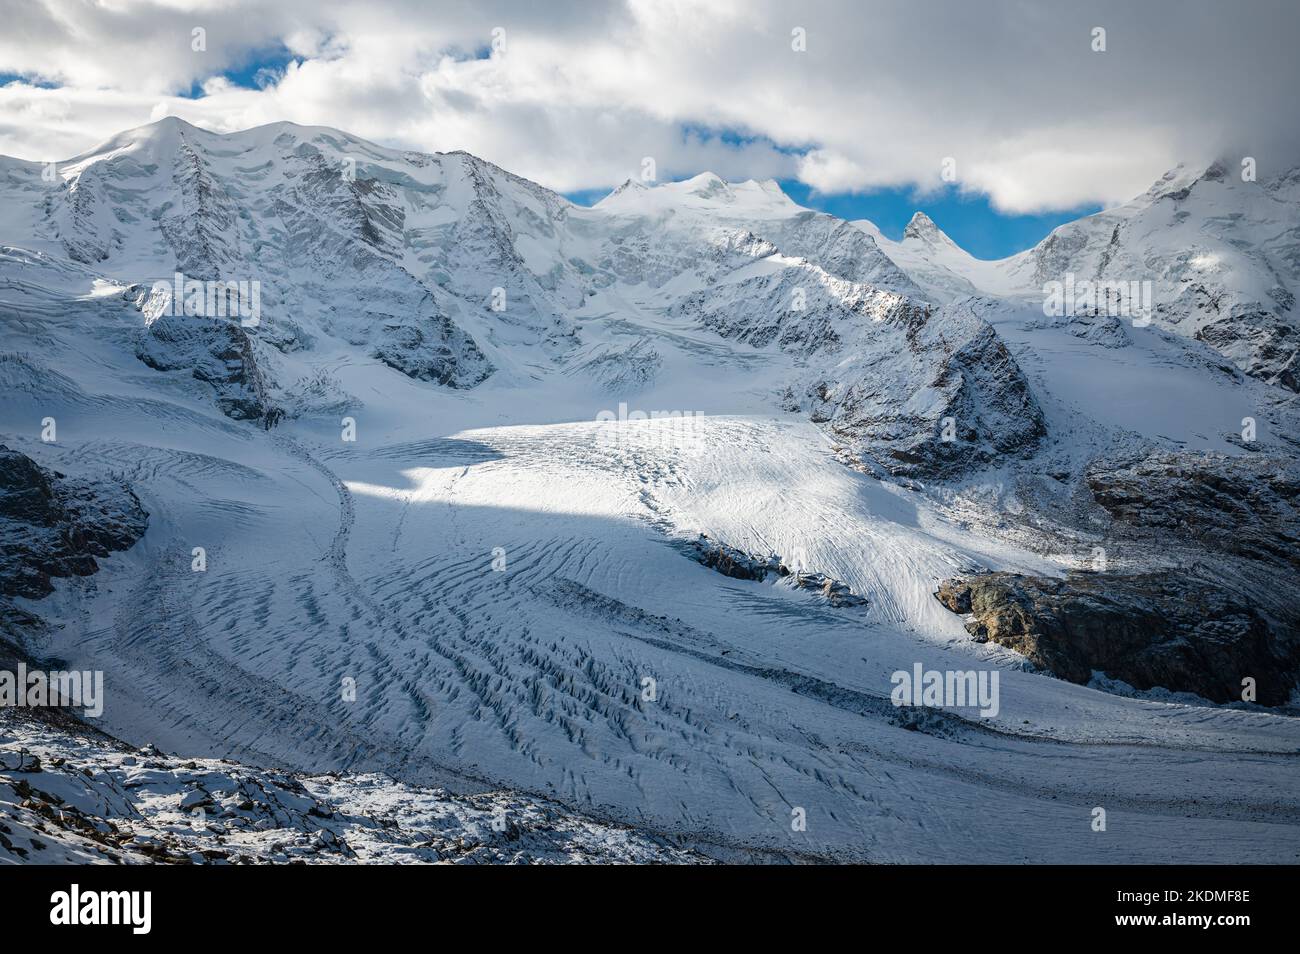 Vue spectaculaire sur le glacier Morteratsch en Suisse depuis le refuge Diavolezza à une altitude de 2972 mètres. Banque D'Images